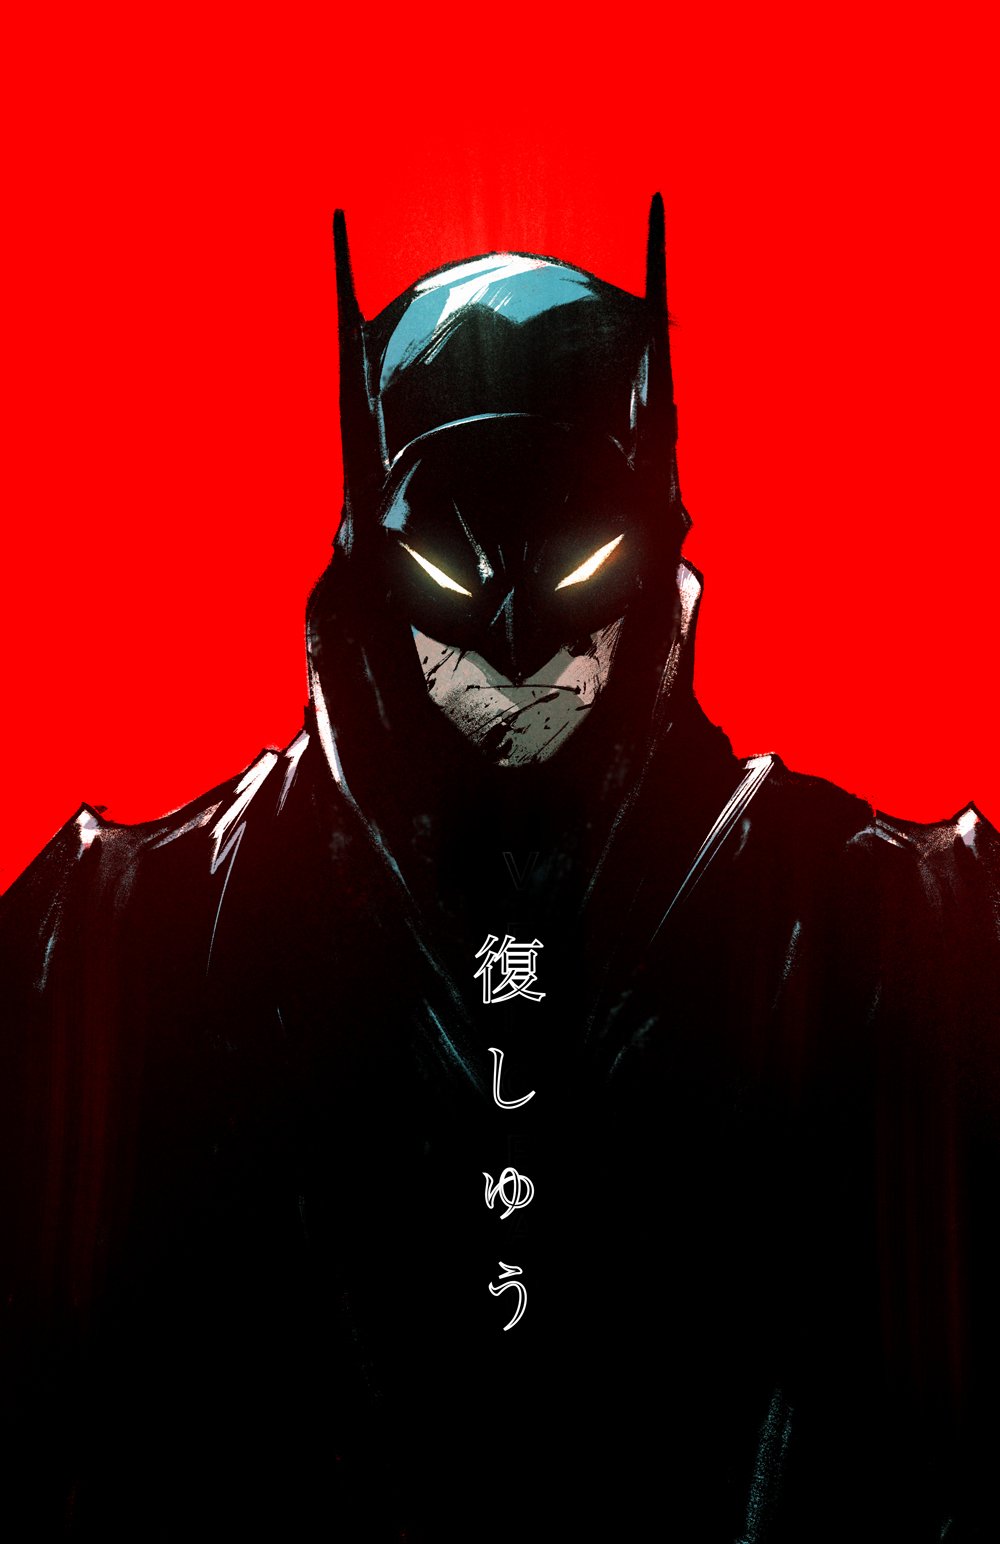 Batman: Arkham Origins, Dublapédia